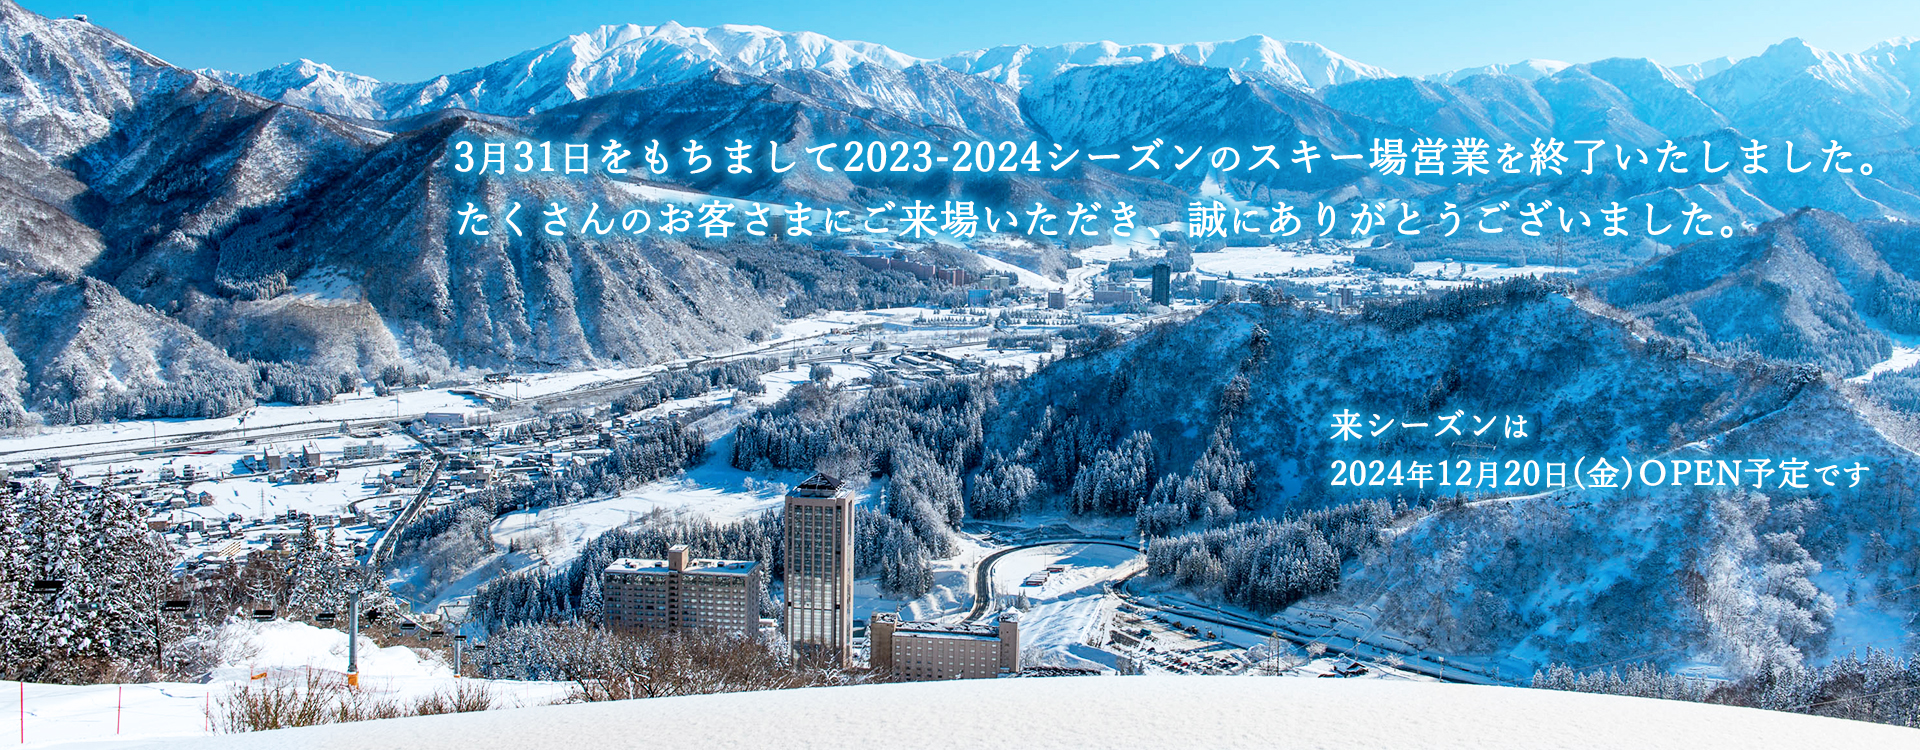 3月31日をもちまして2023-2024シーズンのスキー場営業を終了いたしました。たくさんのお客さまにご来場いただき、誠にありがとうございました。来シーズンは2024年12月20日（金）OPEN予定です。